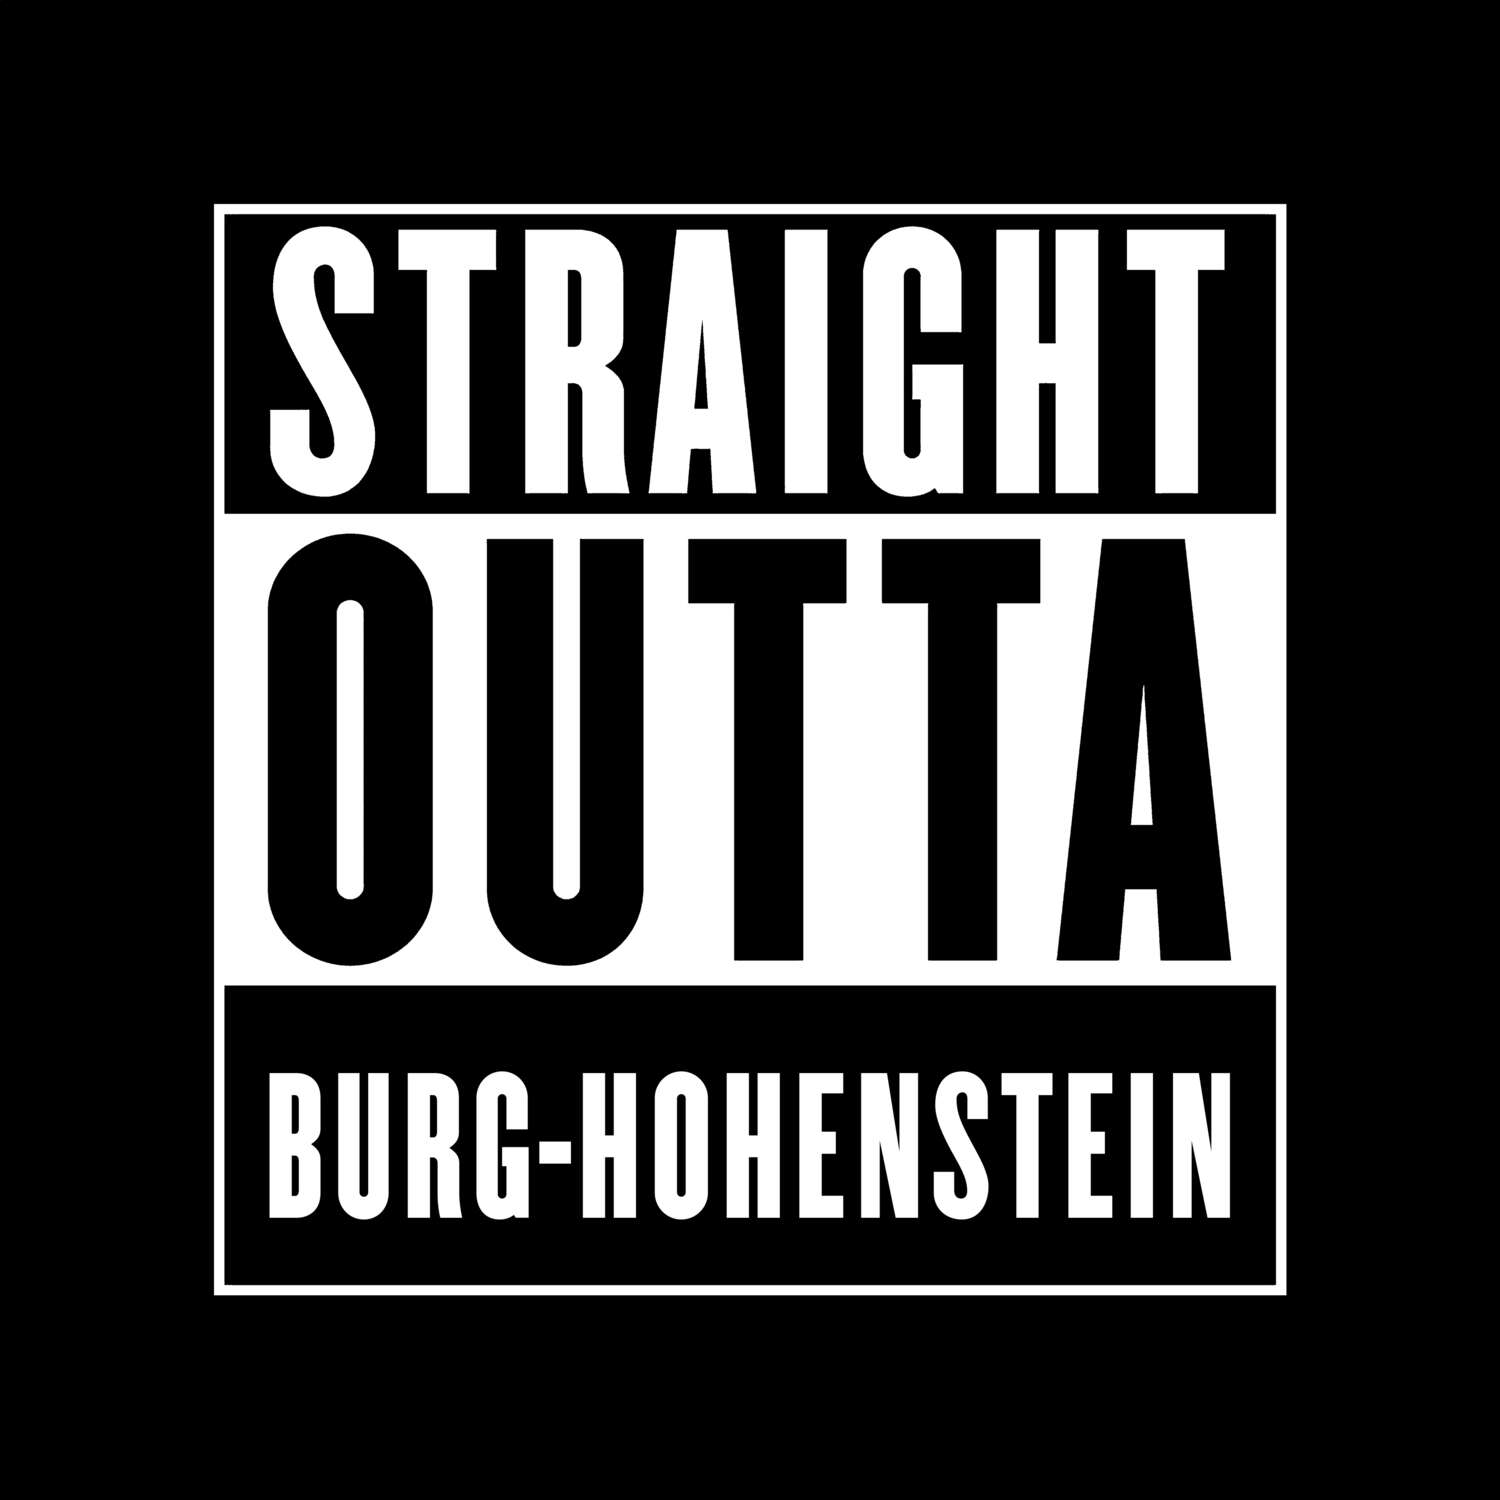 Burg-Hohenstein T-Shirt »Straight Outta«